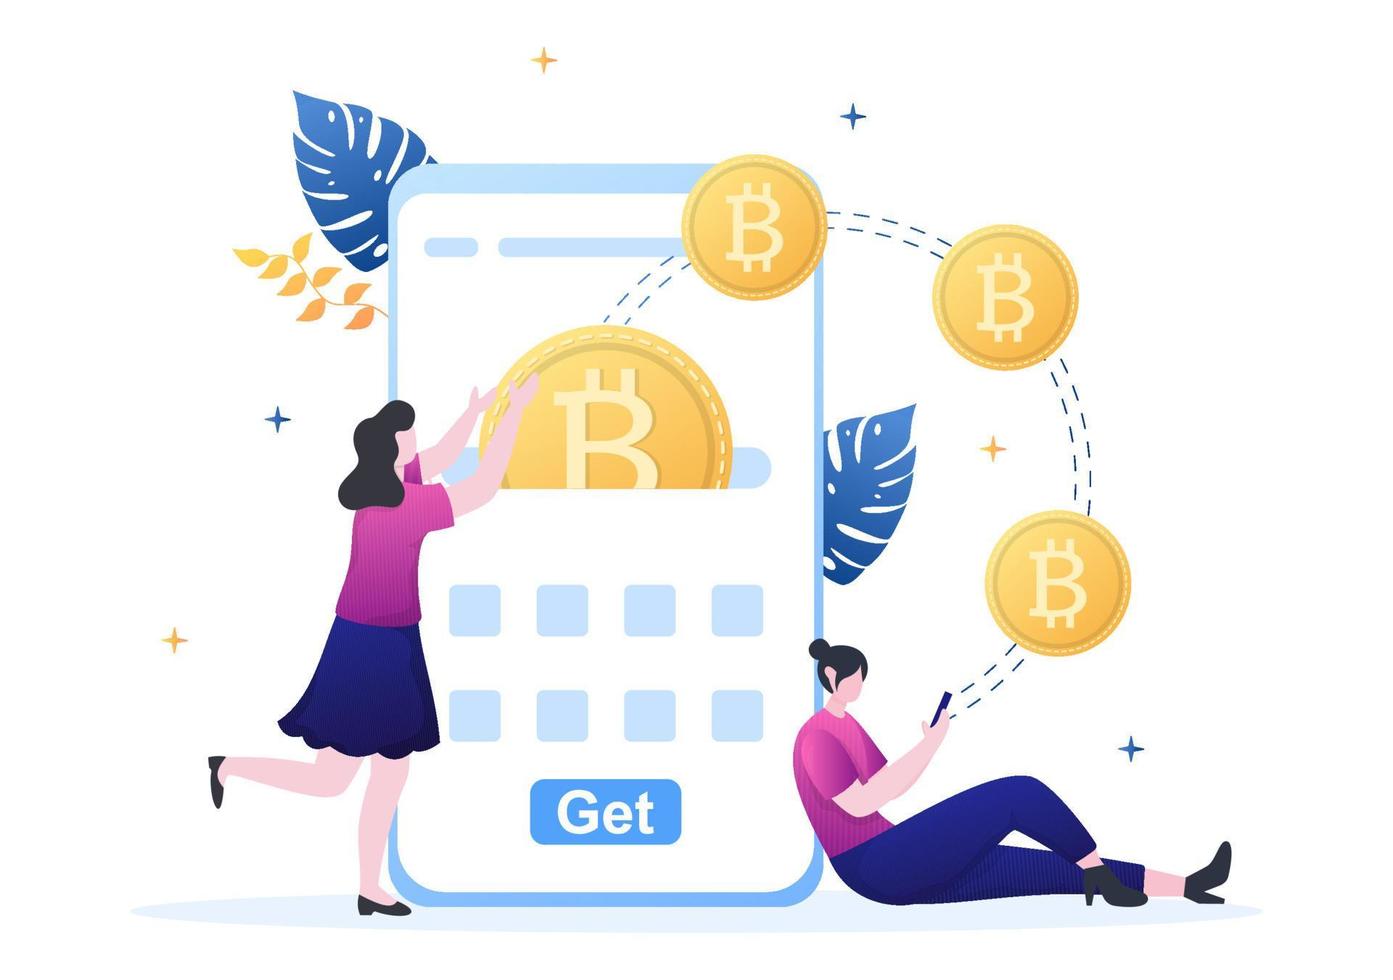 Kryptowährungs-Wallet-App auf dem Handy von Blockchain-Technologie, Bitcoin, Geldmarkt, Altcoins oder Finanzaustausch mit Kreditkarte in flacher Vektorillustration vektor